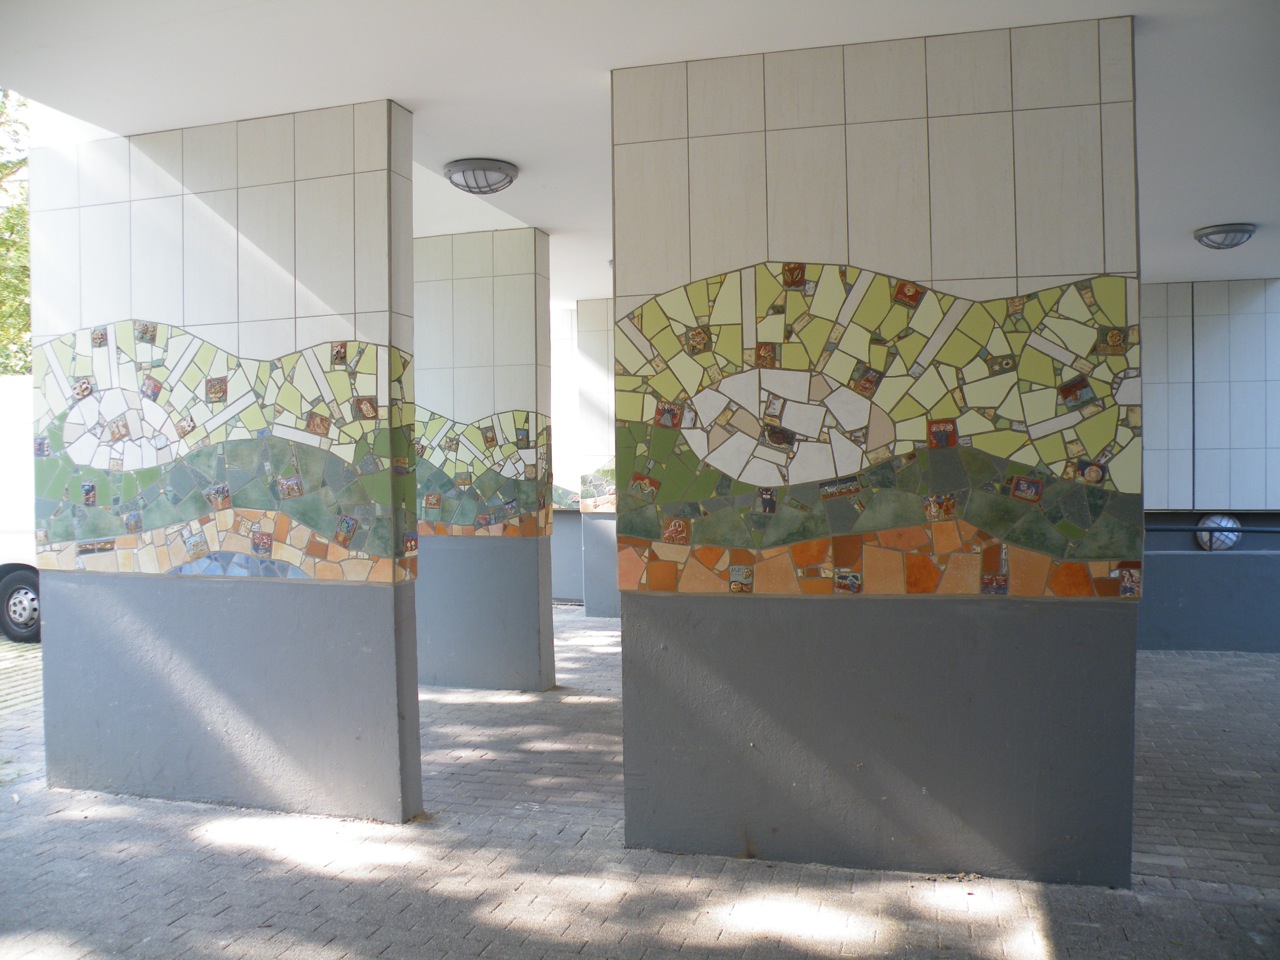 Kunstwerk in einem Durchgang in Form einer bunten Mosaikverzierung